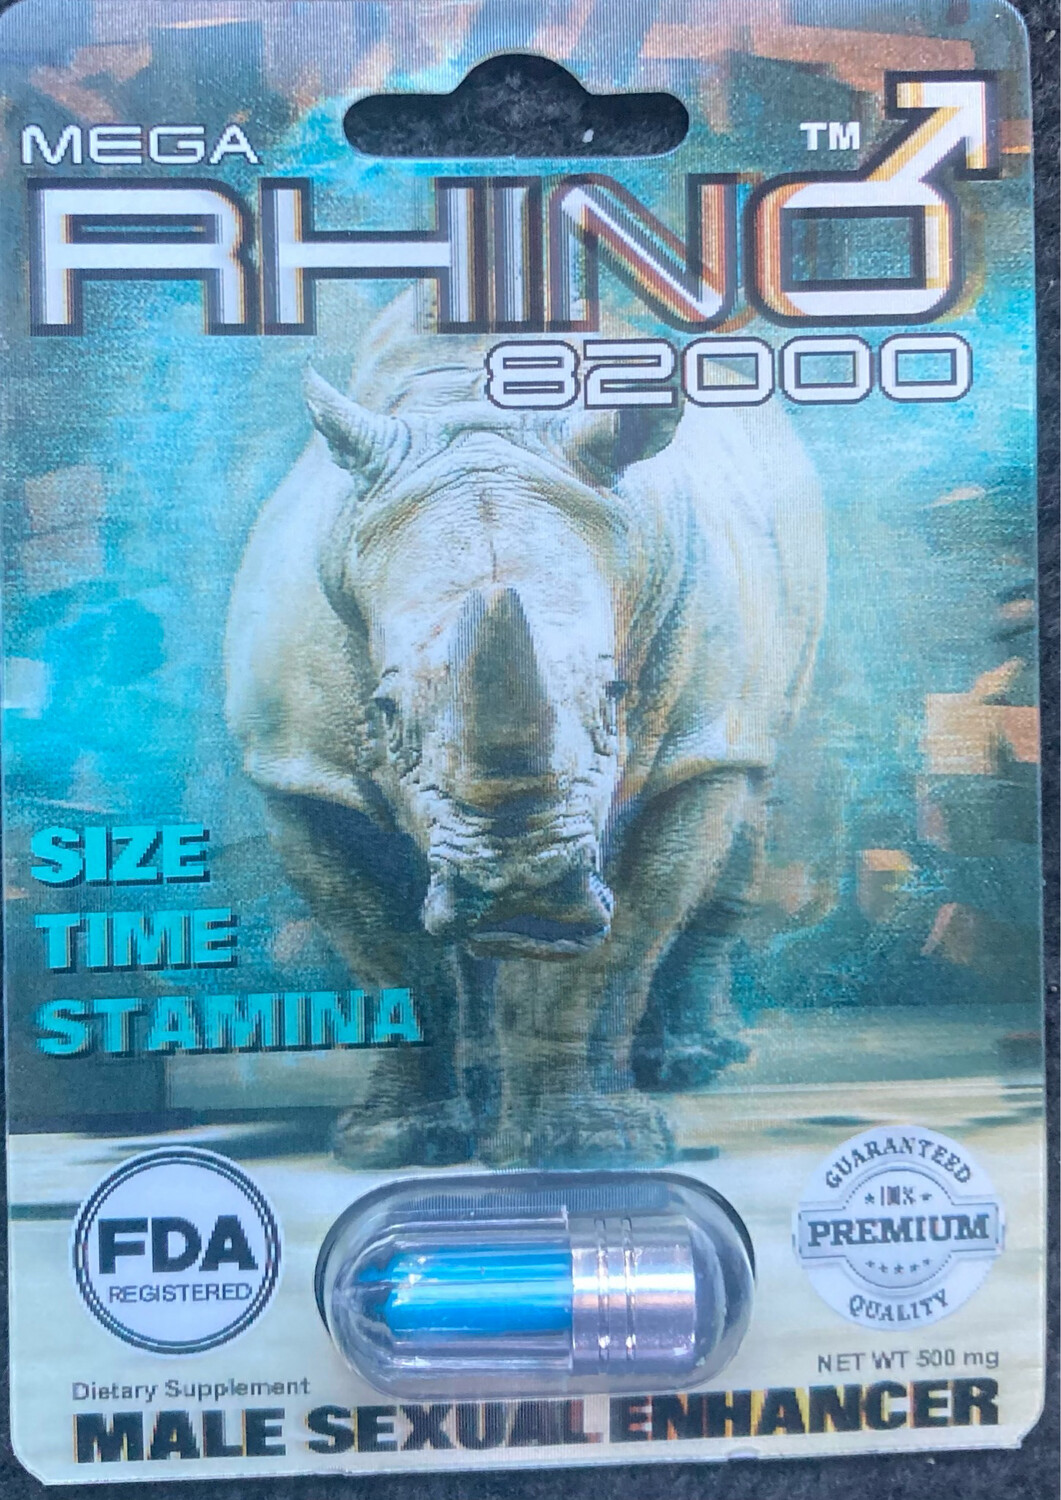 MEGA RHINO 82000 (500 mg) (1) Capsule